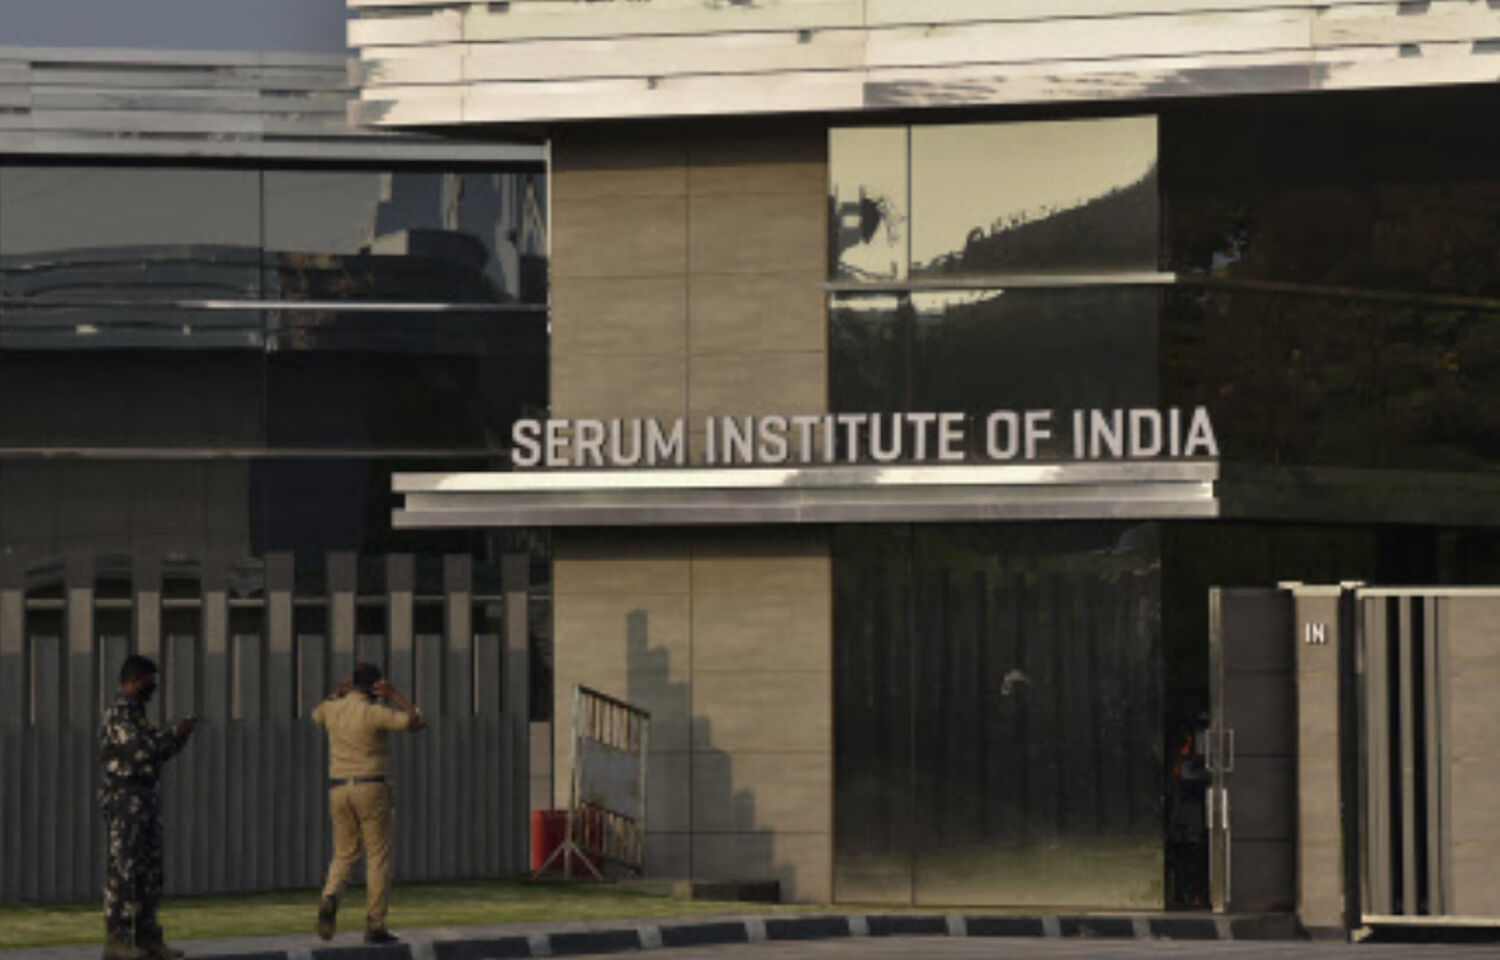 Biocon Serum Institute of India